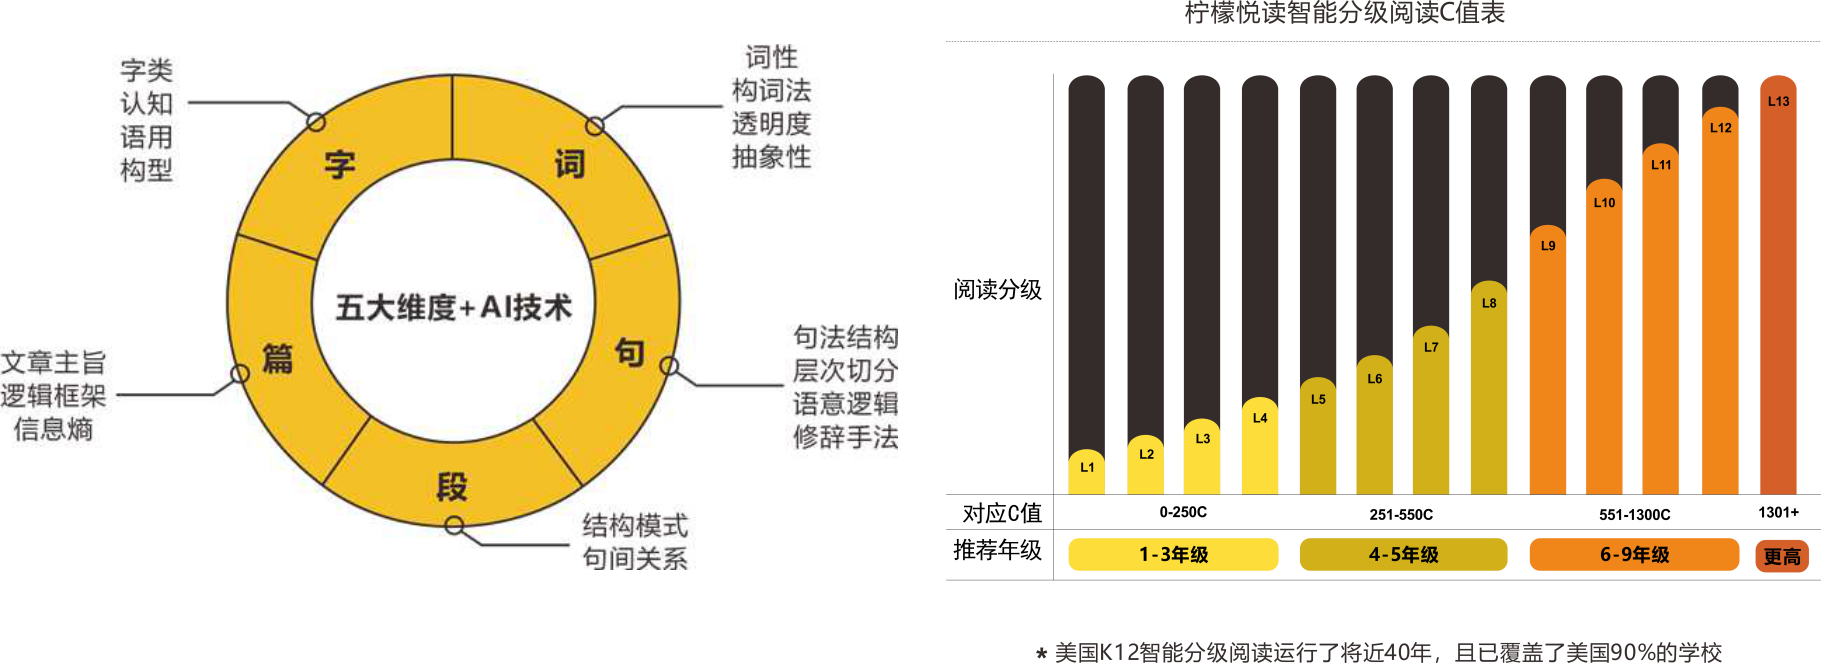 36氪首发 | 提供中文分级阅读整体解决方案，「柠檬悦读」获 5000 万元天使轮融资